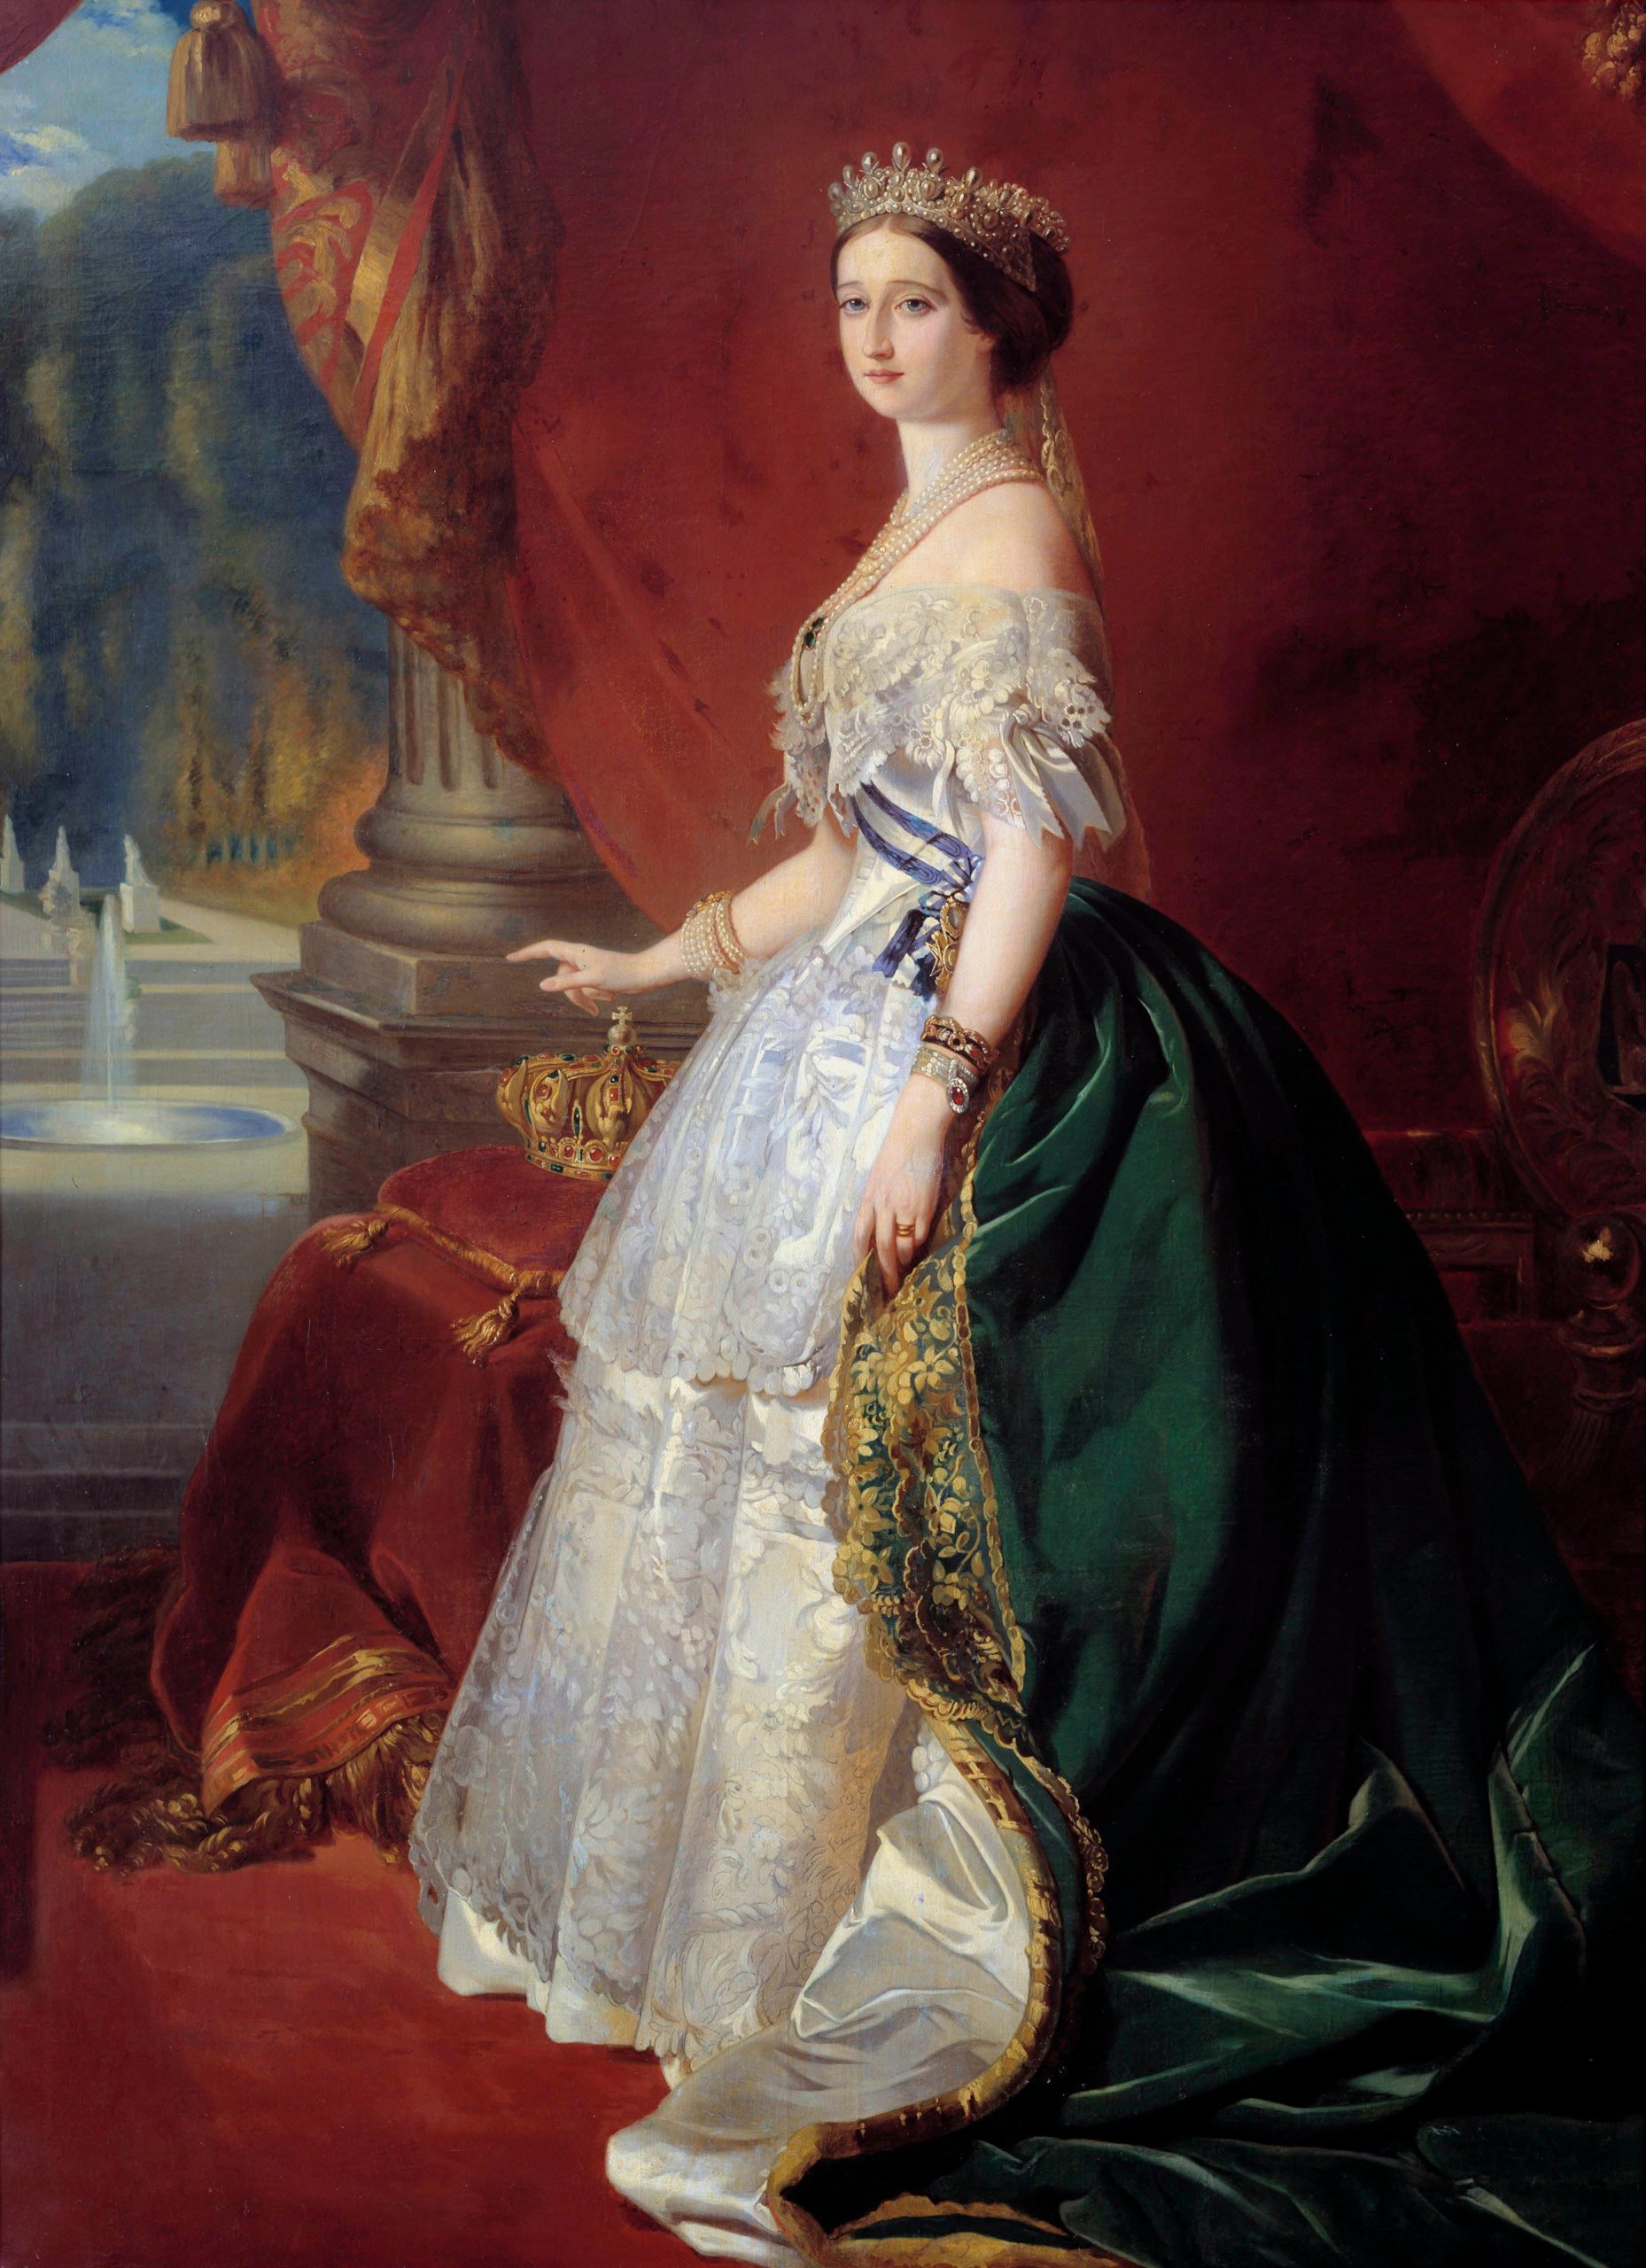 2 FÉVRIER 1836 : MADAME MÈRE MEURT À ROME